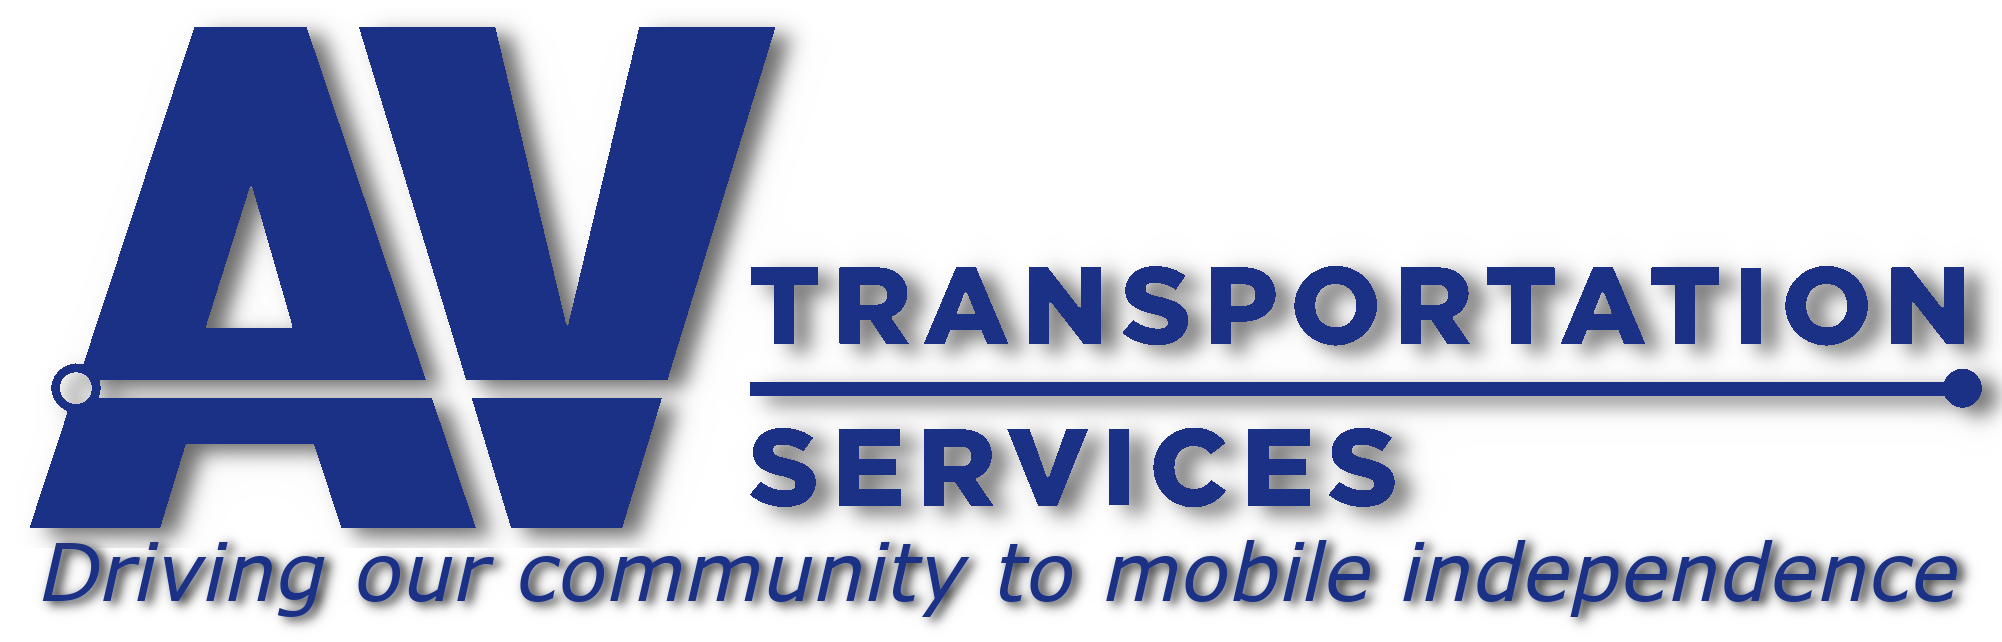 AV Transportation Service